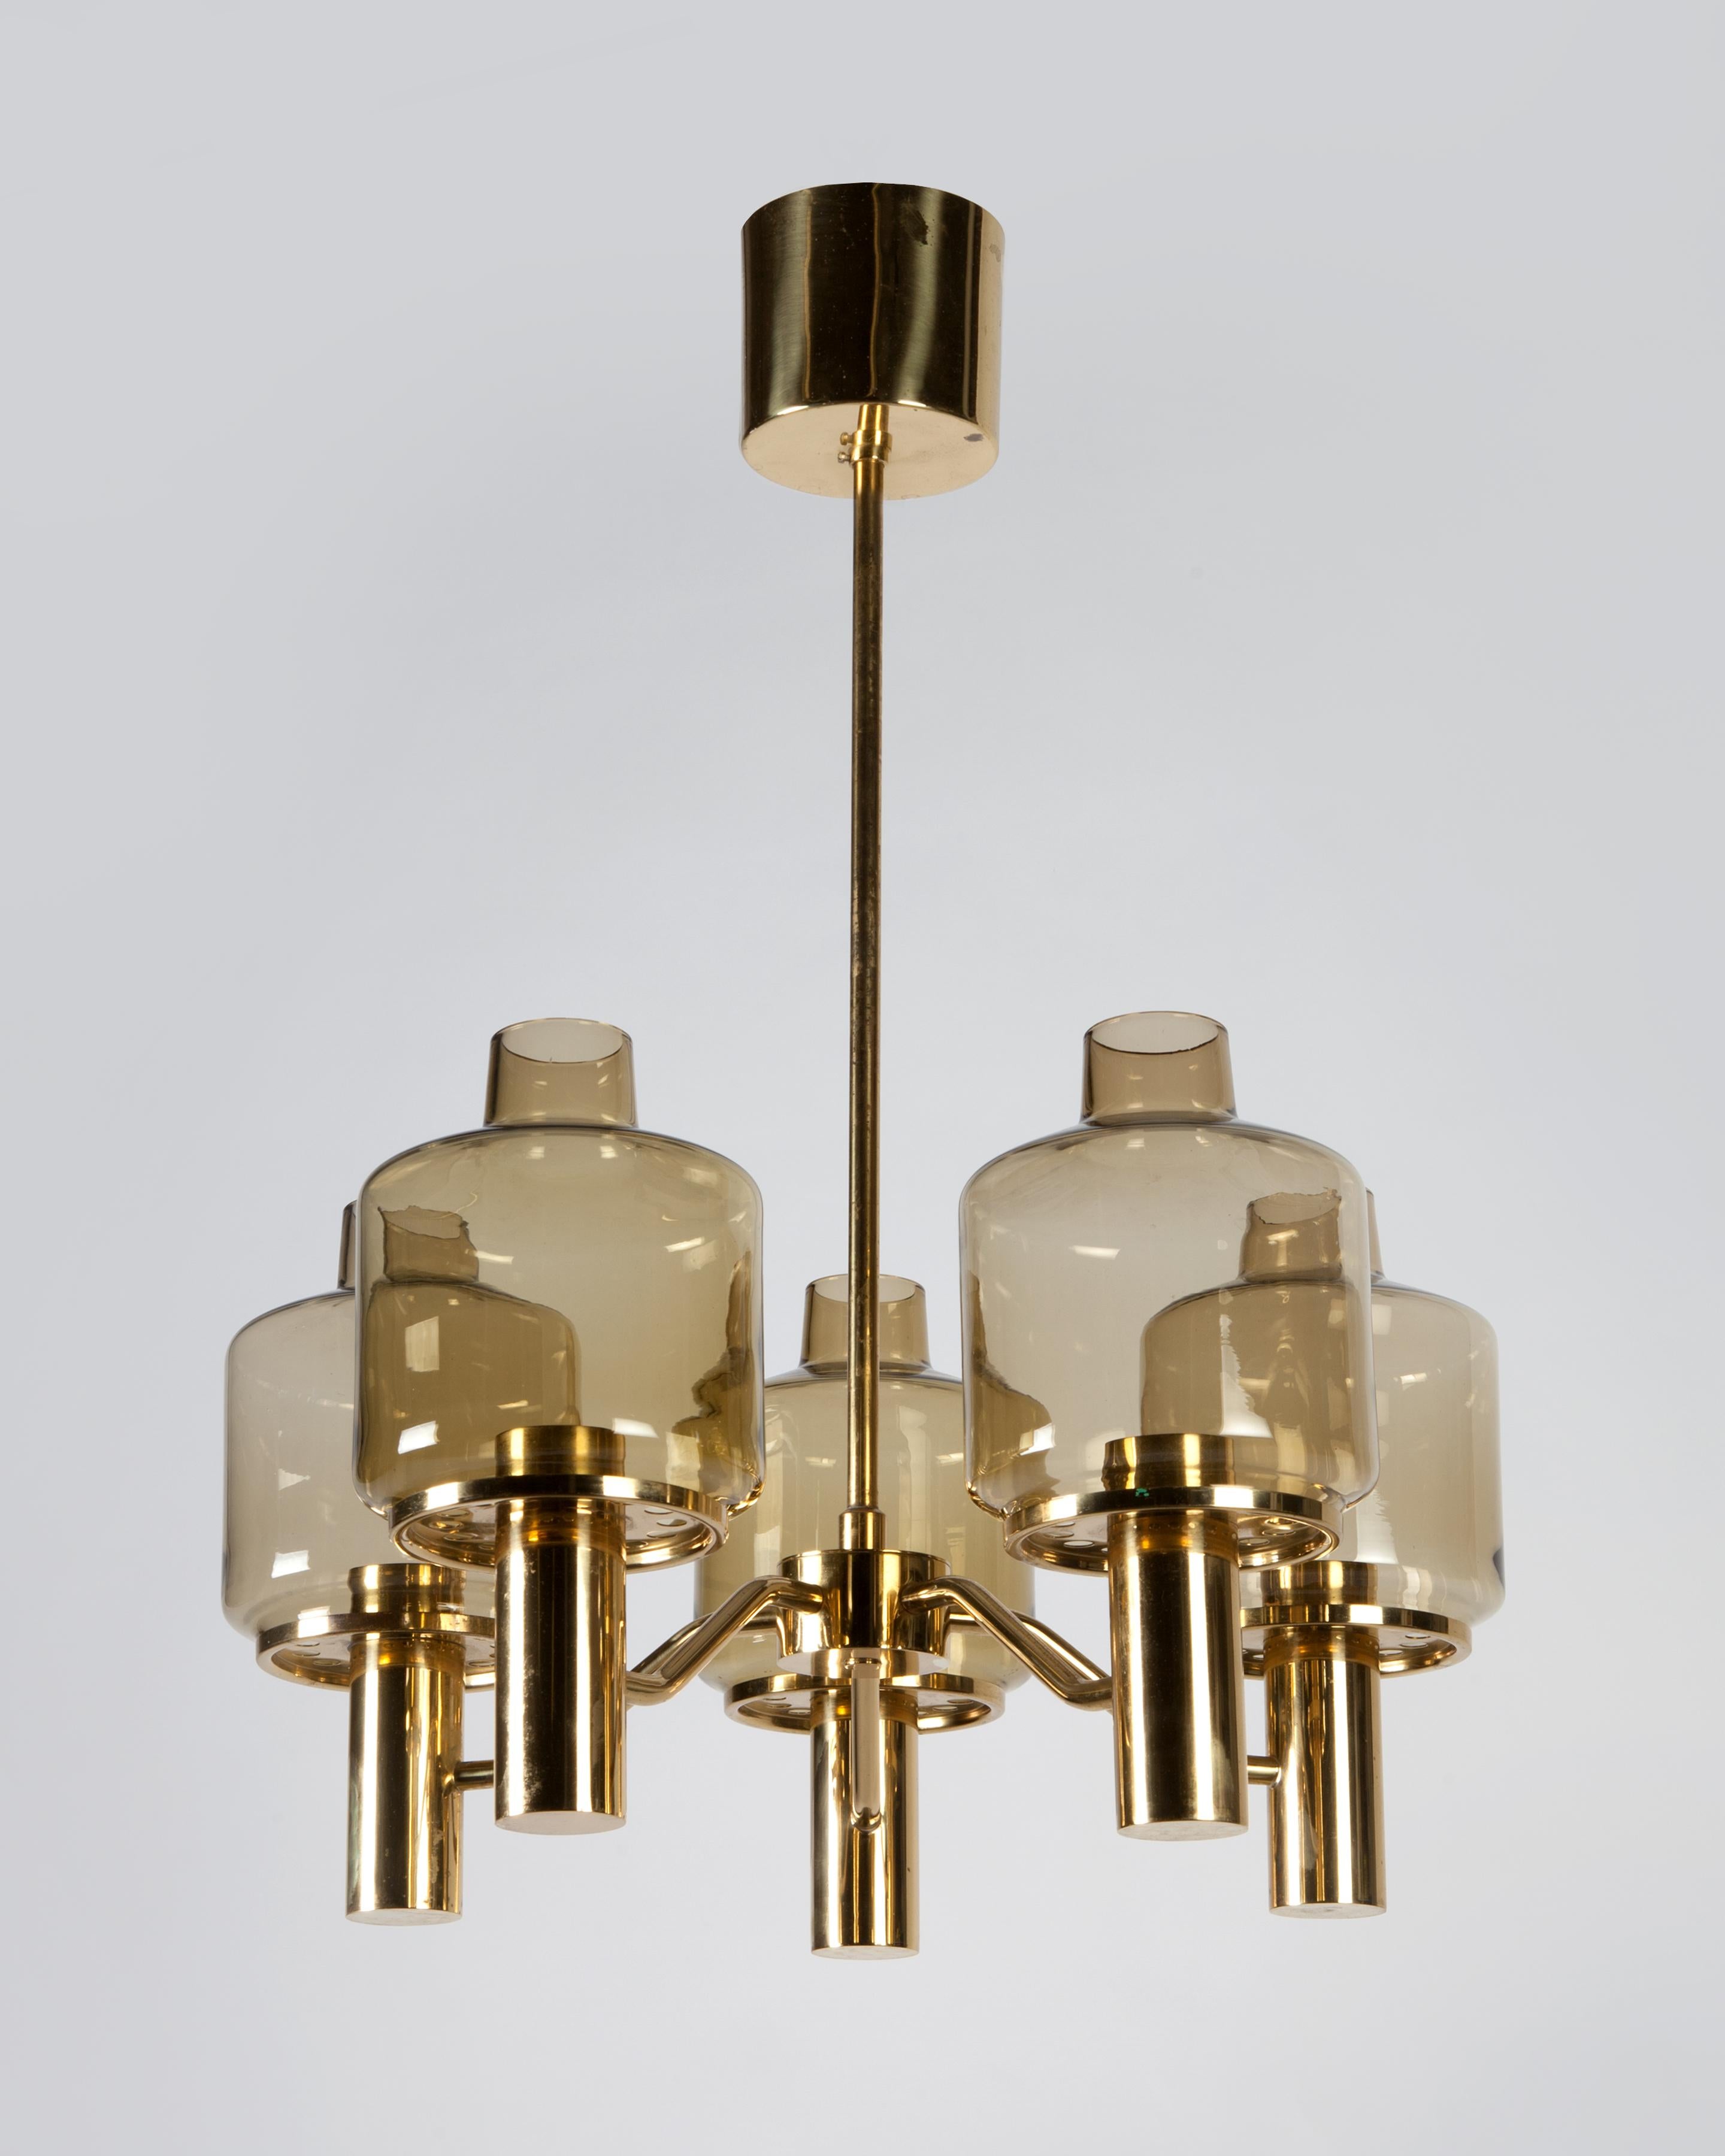 Scandinavian Modern Brass and Glass Chandelier by Swedish Maker Hans-Agne Jakobsson, Circa 1960